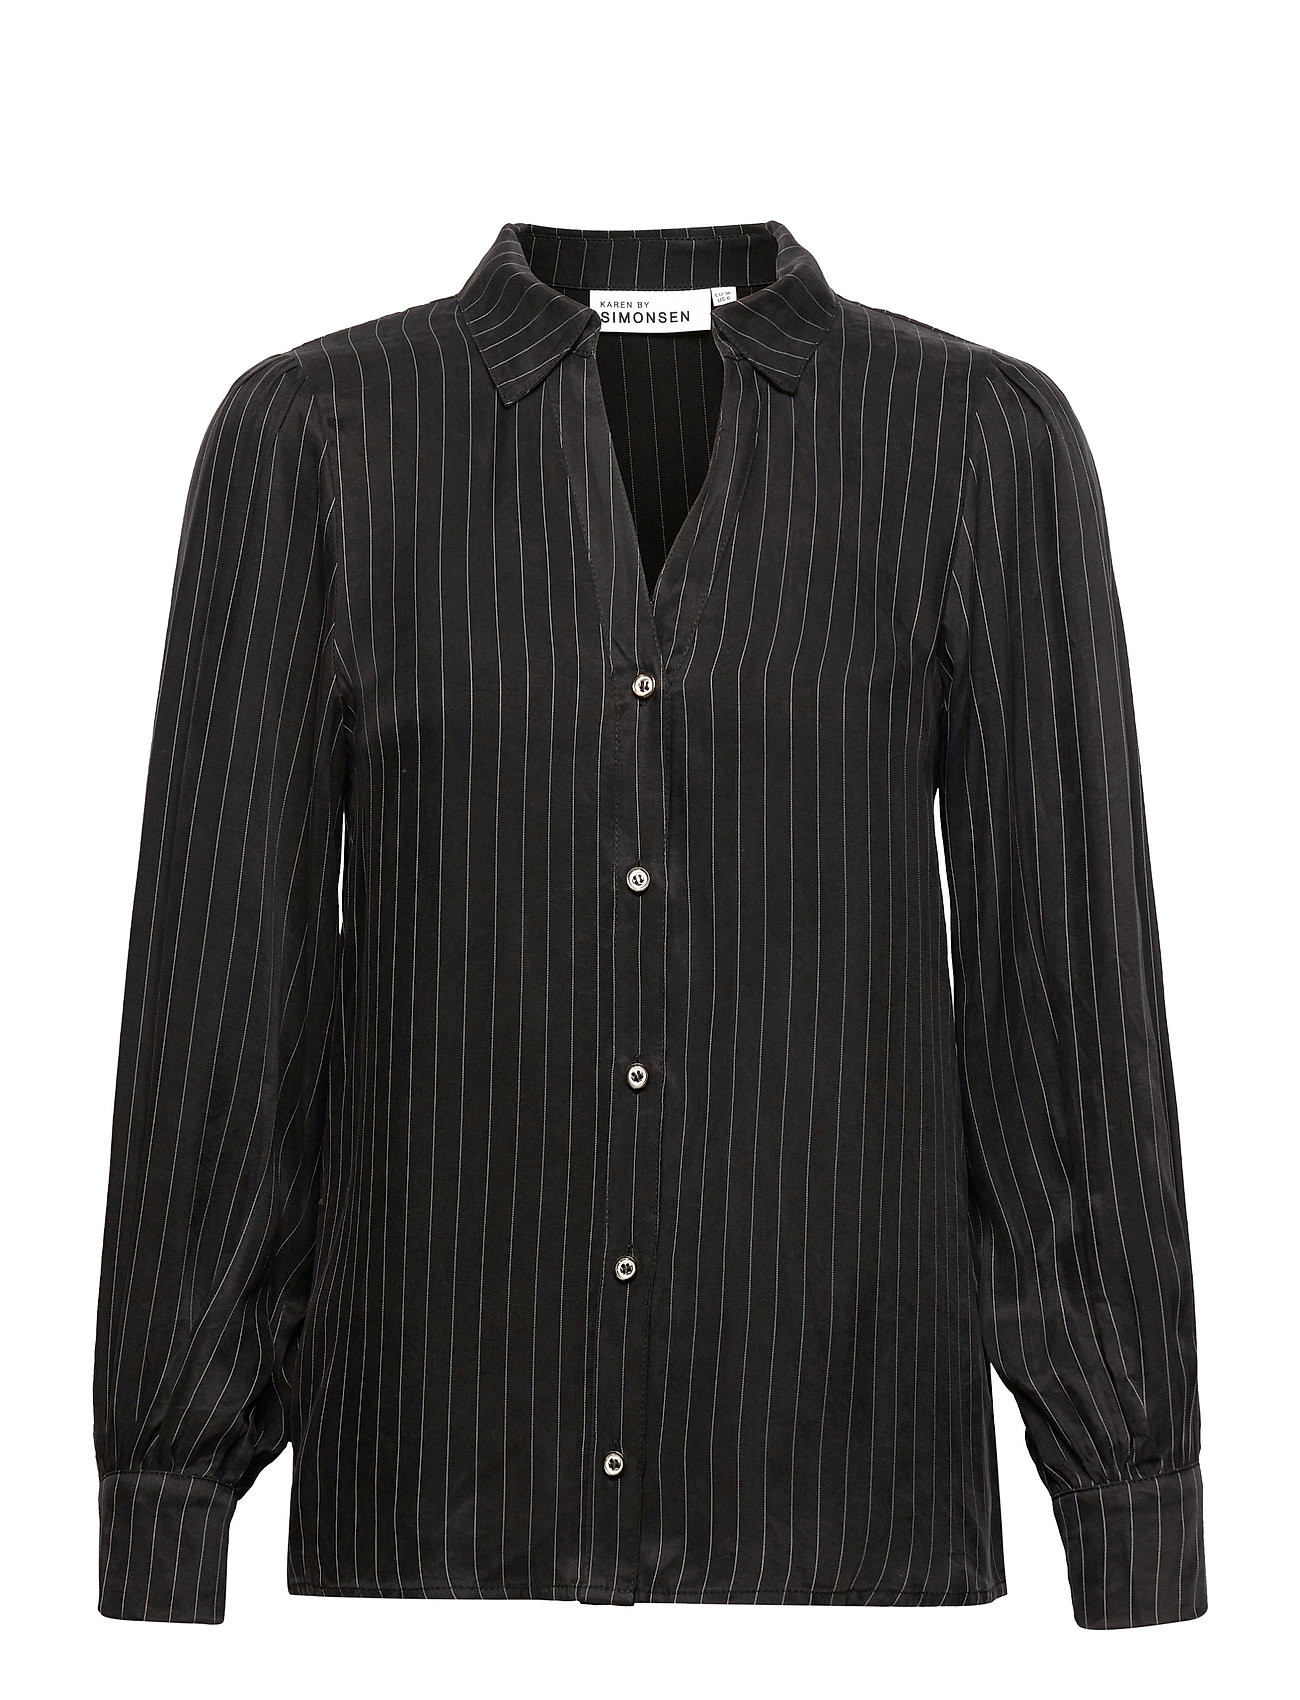 Mistykb Blouse Tops Shirts Long-sleeved Black Karen By Simonsen